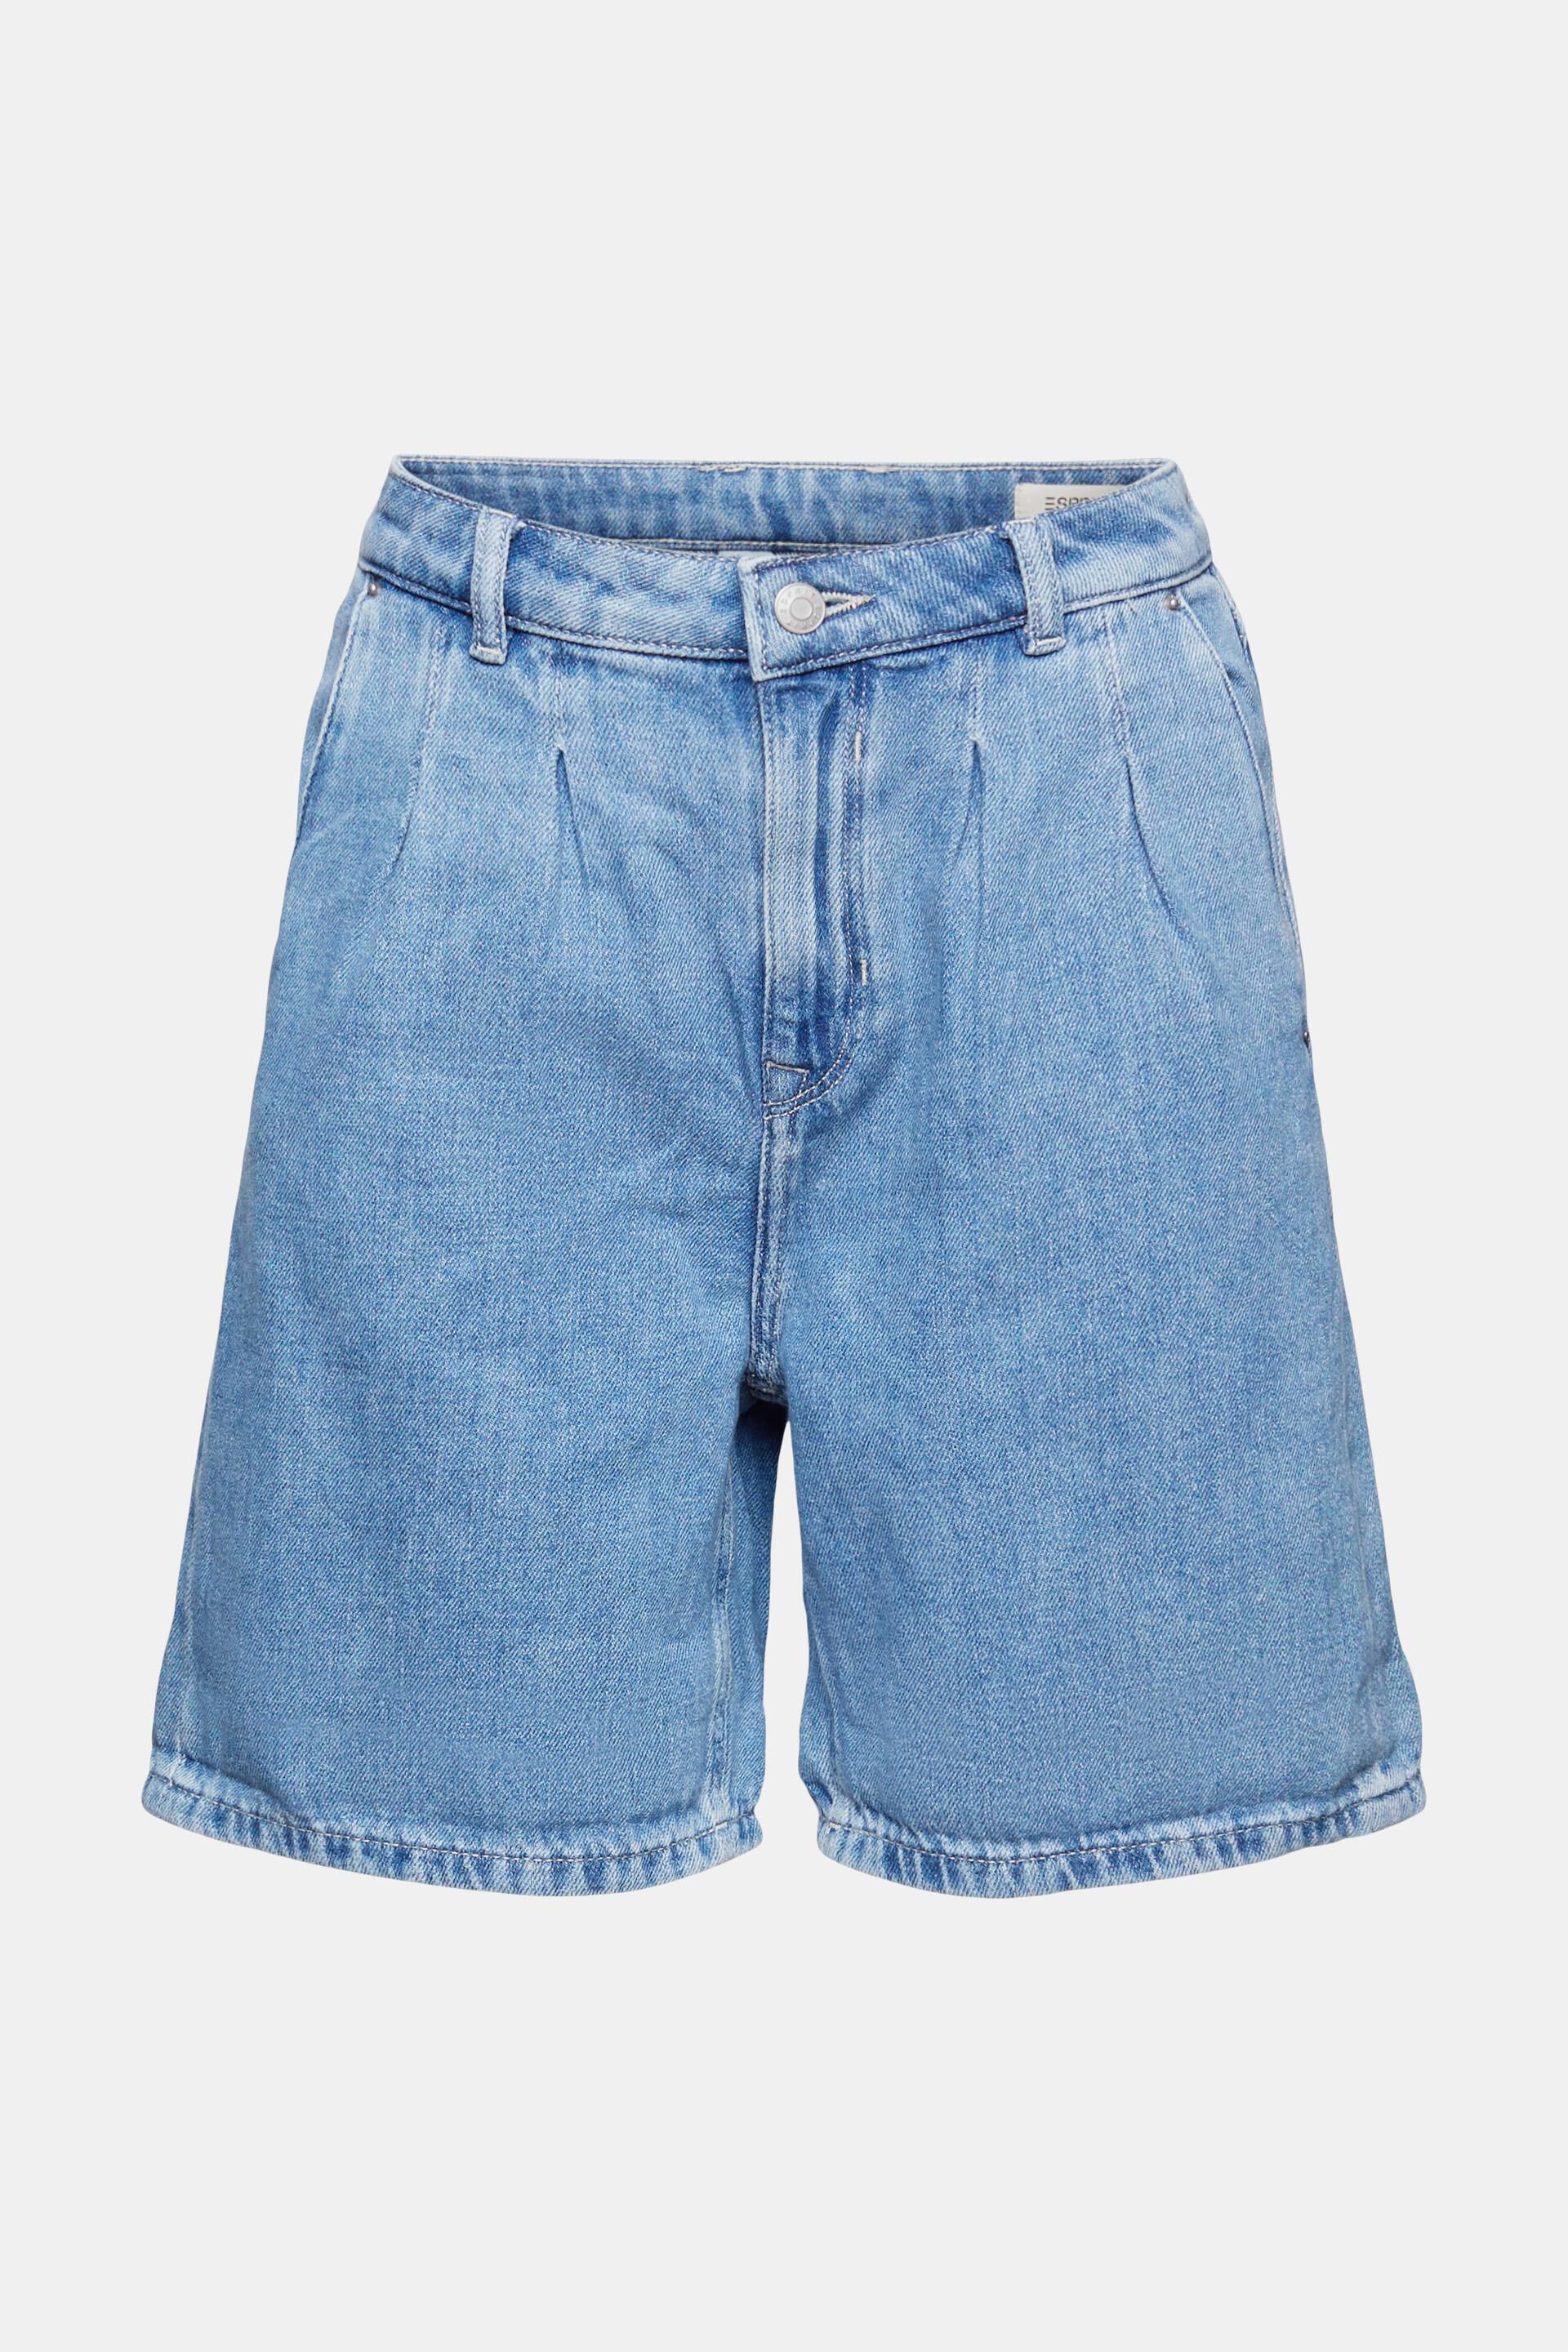 Dames kort Amazon Dames Kleding Broeken & Jeans Korte broeken Shorts Blauw Indigo Denim 1500 44 